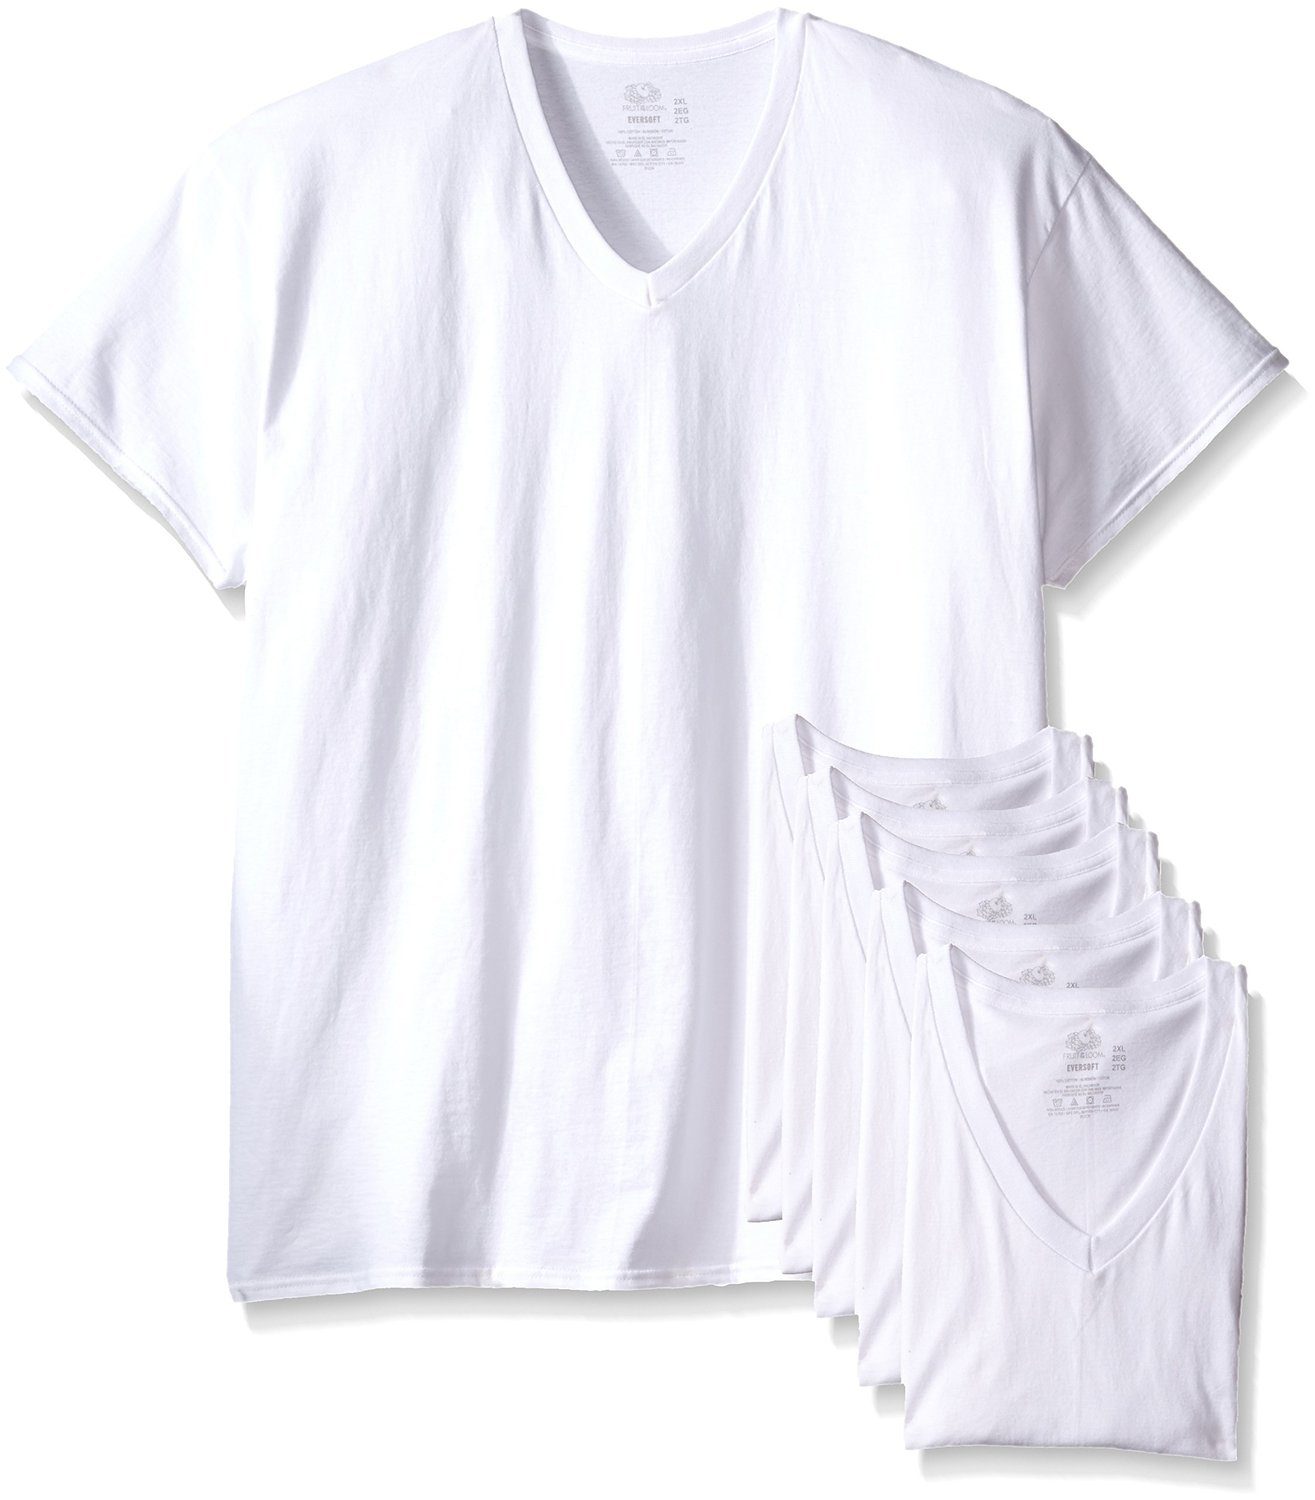 Men's Short Sleeve V-neck T-Shirts, White 6 Pack